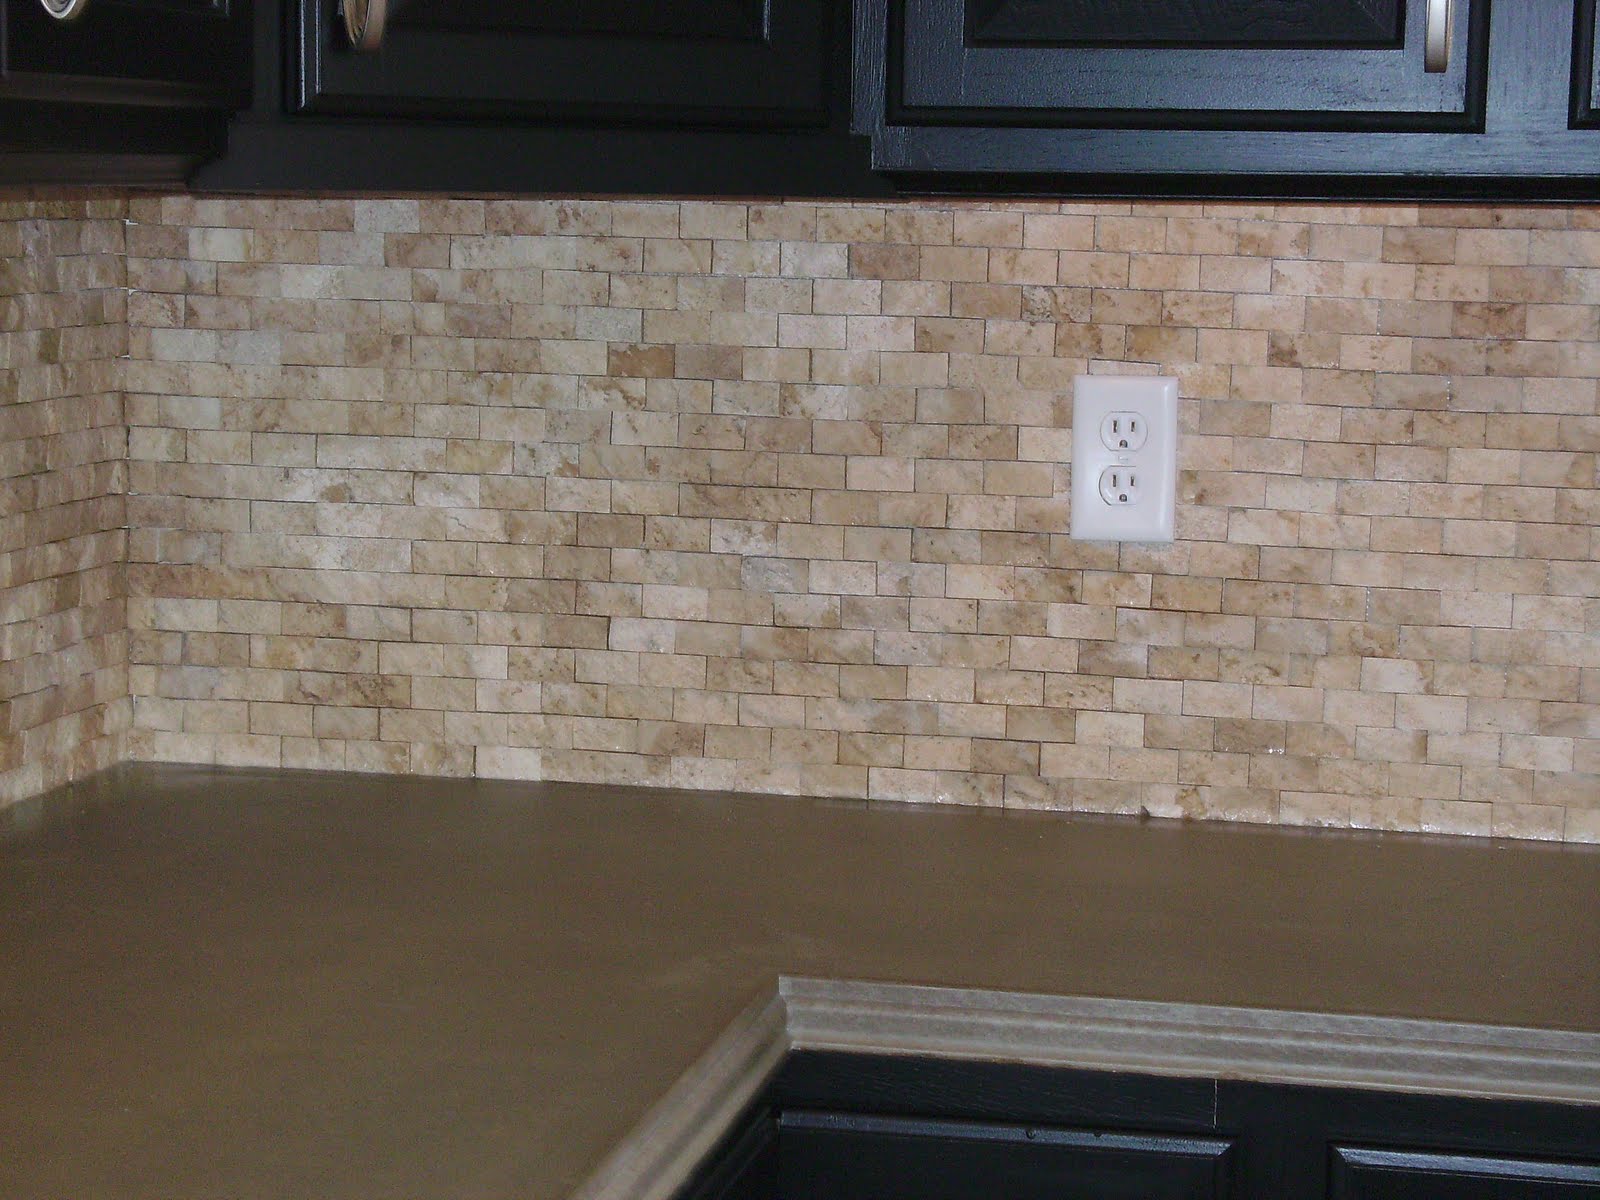 Knapp Tile and Flooring, Inc.: Split Faced Stone Backsplash